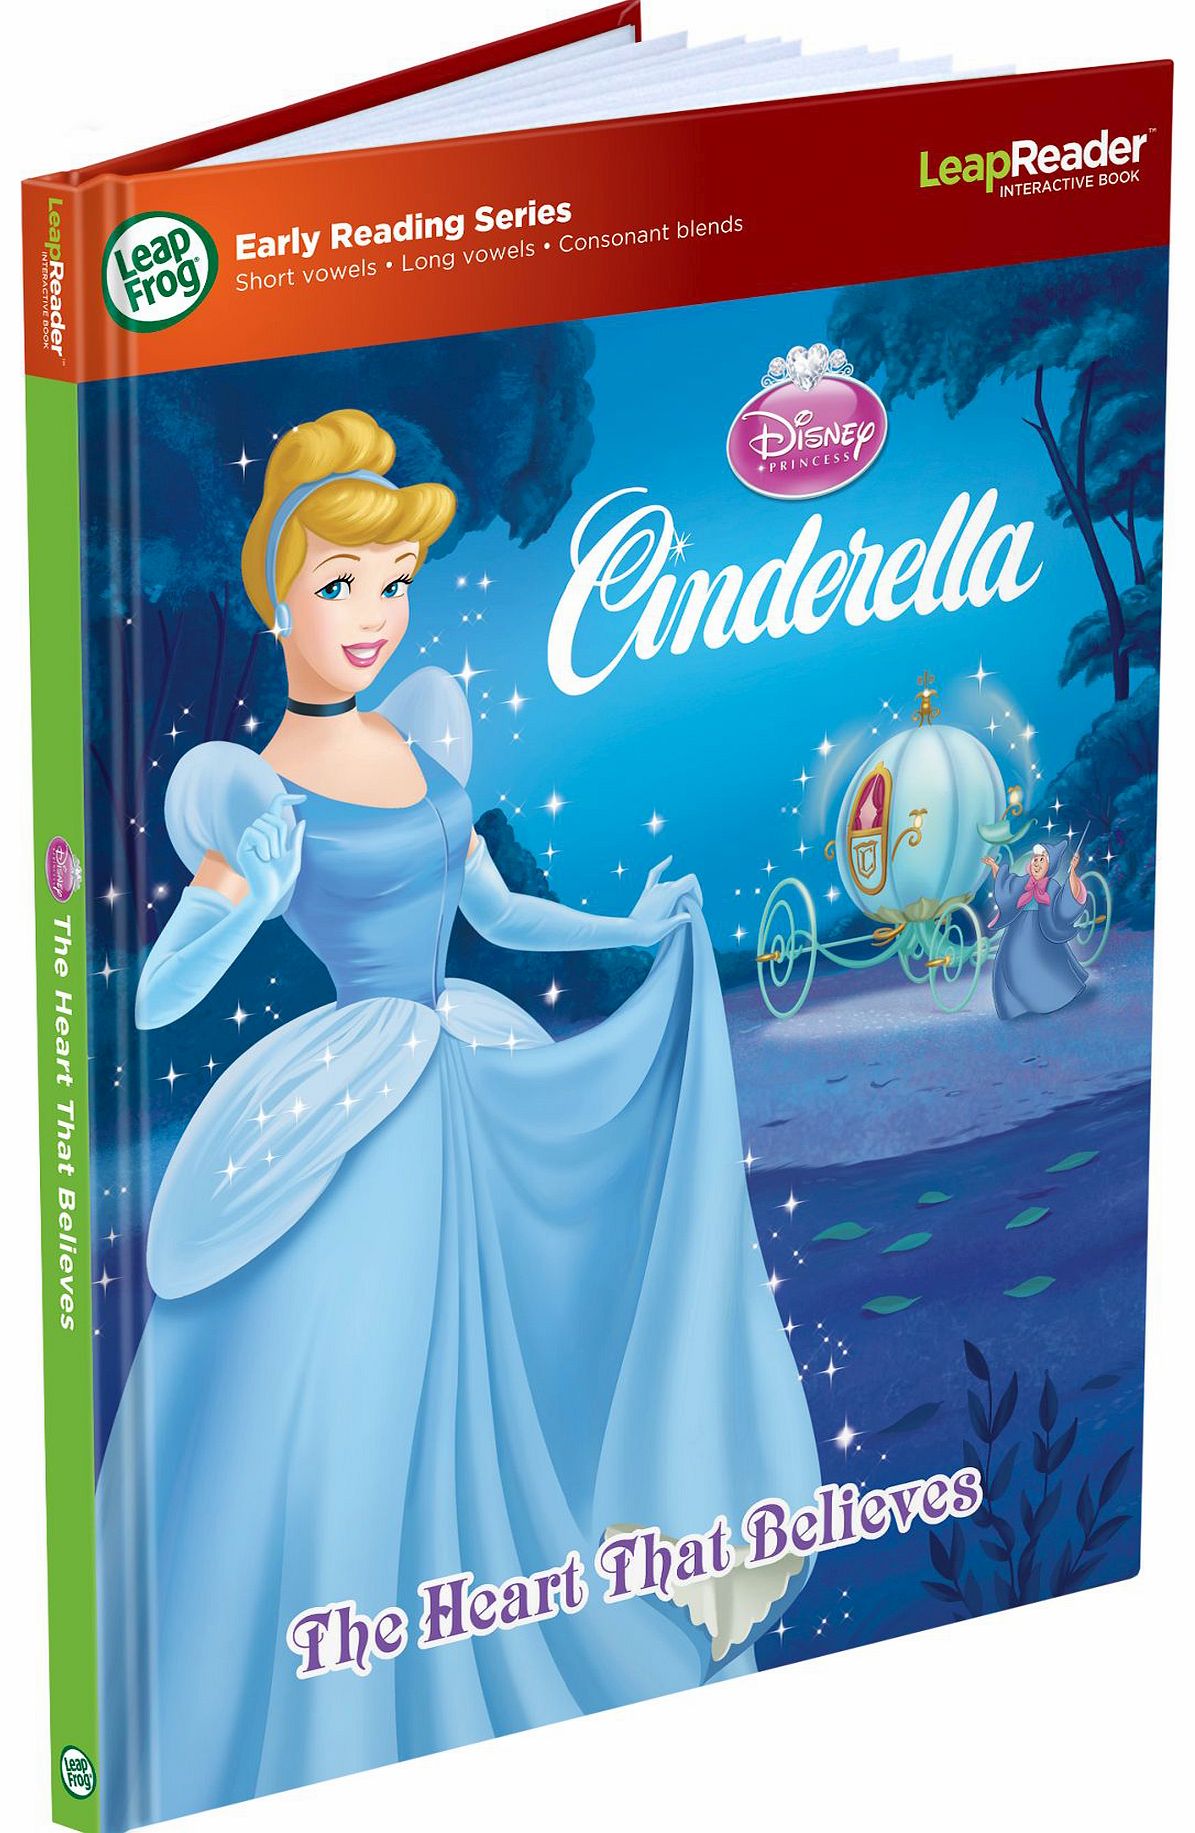 LeapFrog LeapReader Early Reader Storybook - Cinderella